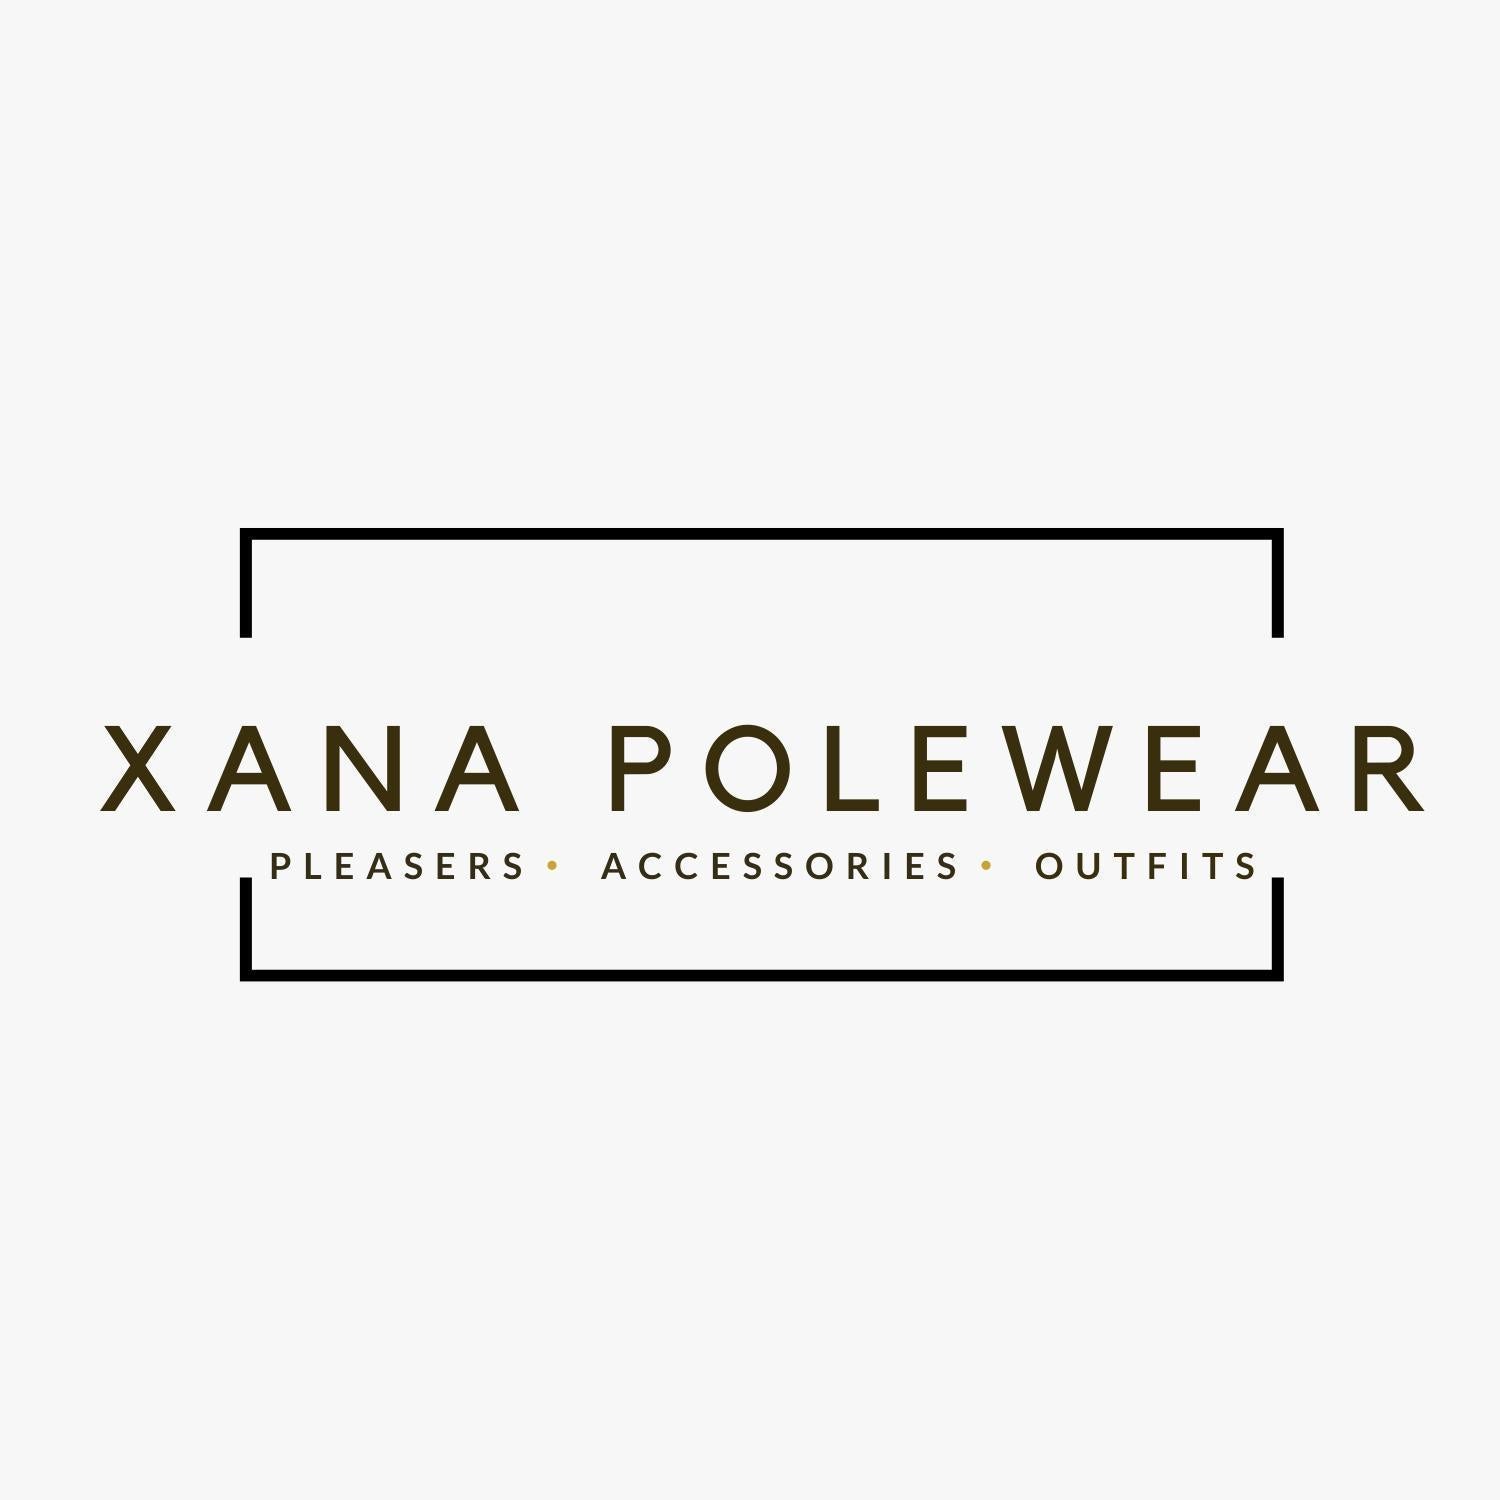 FANNA POLEWEAR – Xana Polewear